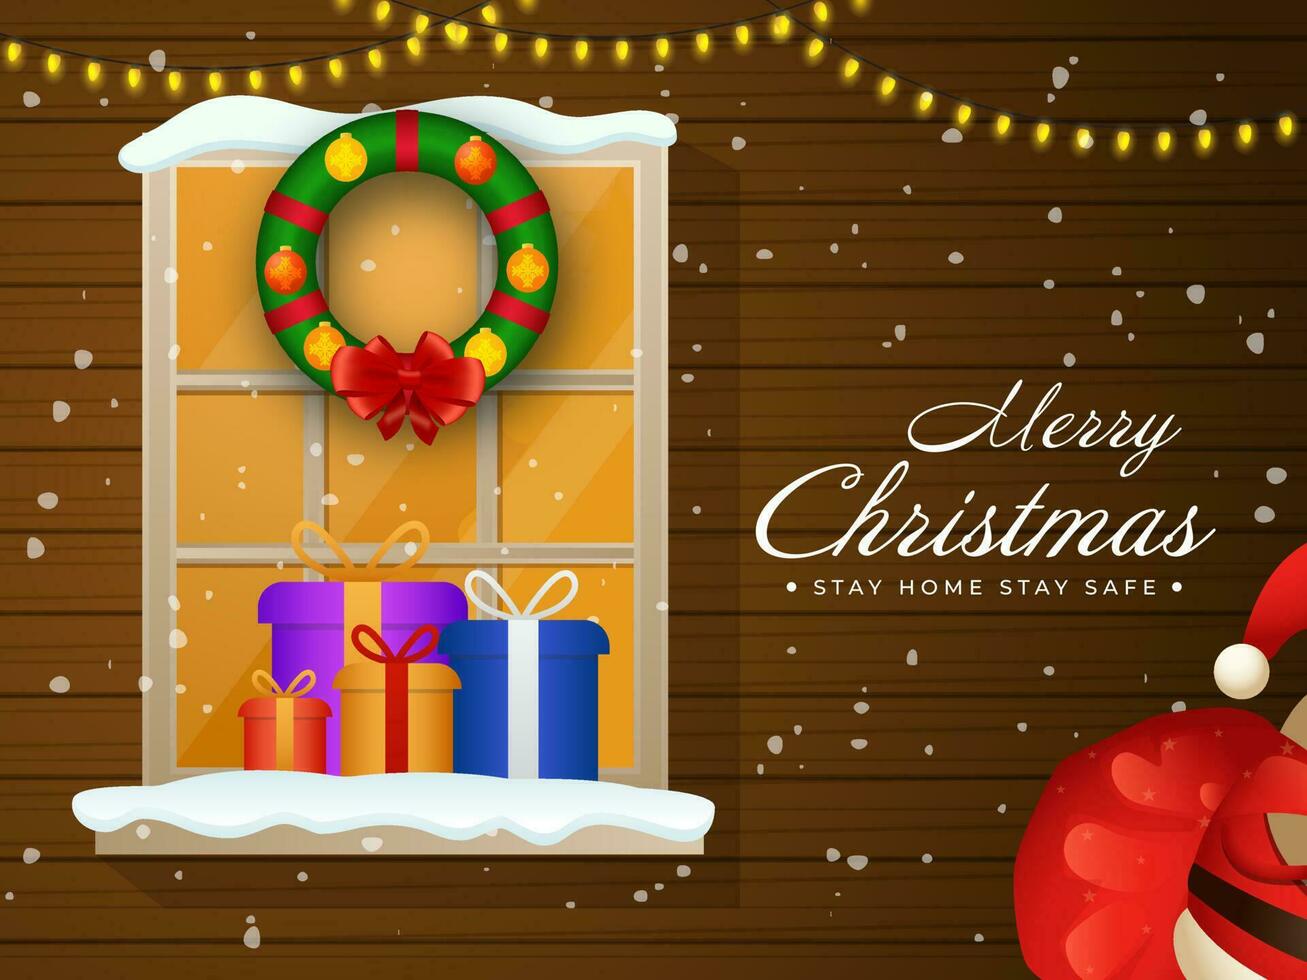 marron en bois chute de neige Contexte avec éclairage guirlande, fenêtre, décor couronne, cadeau des boites sur le occasion de joyeux Noël rester Accueil et rester sûr. vecteur